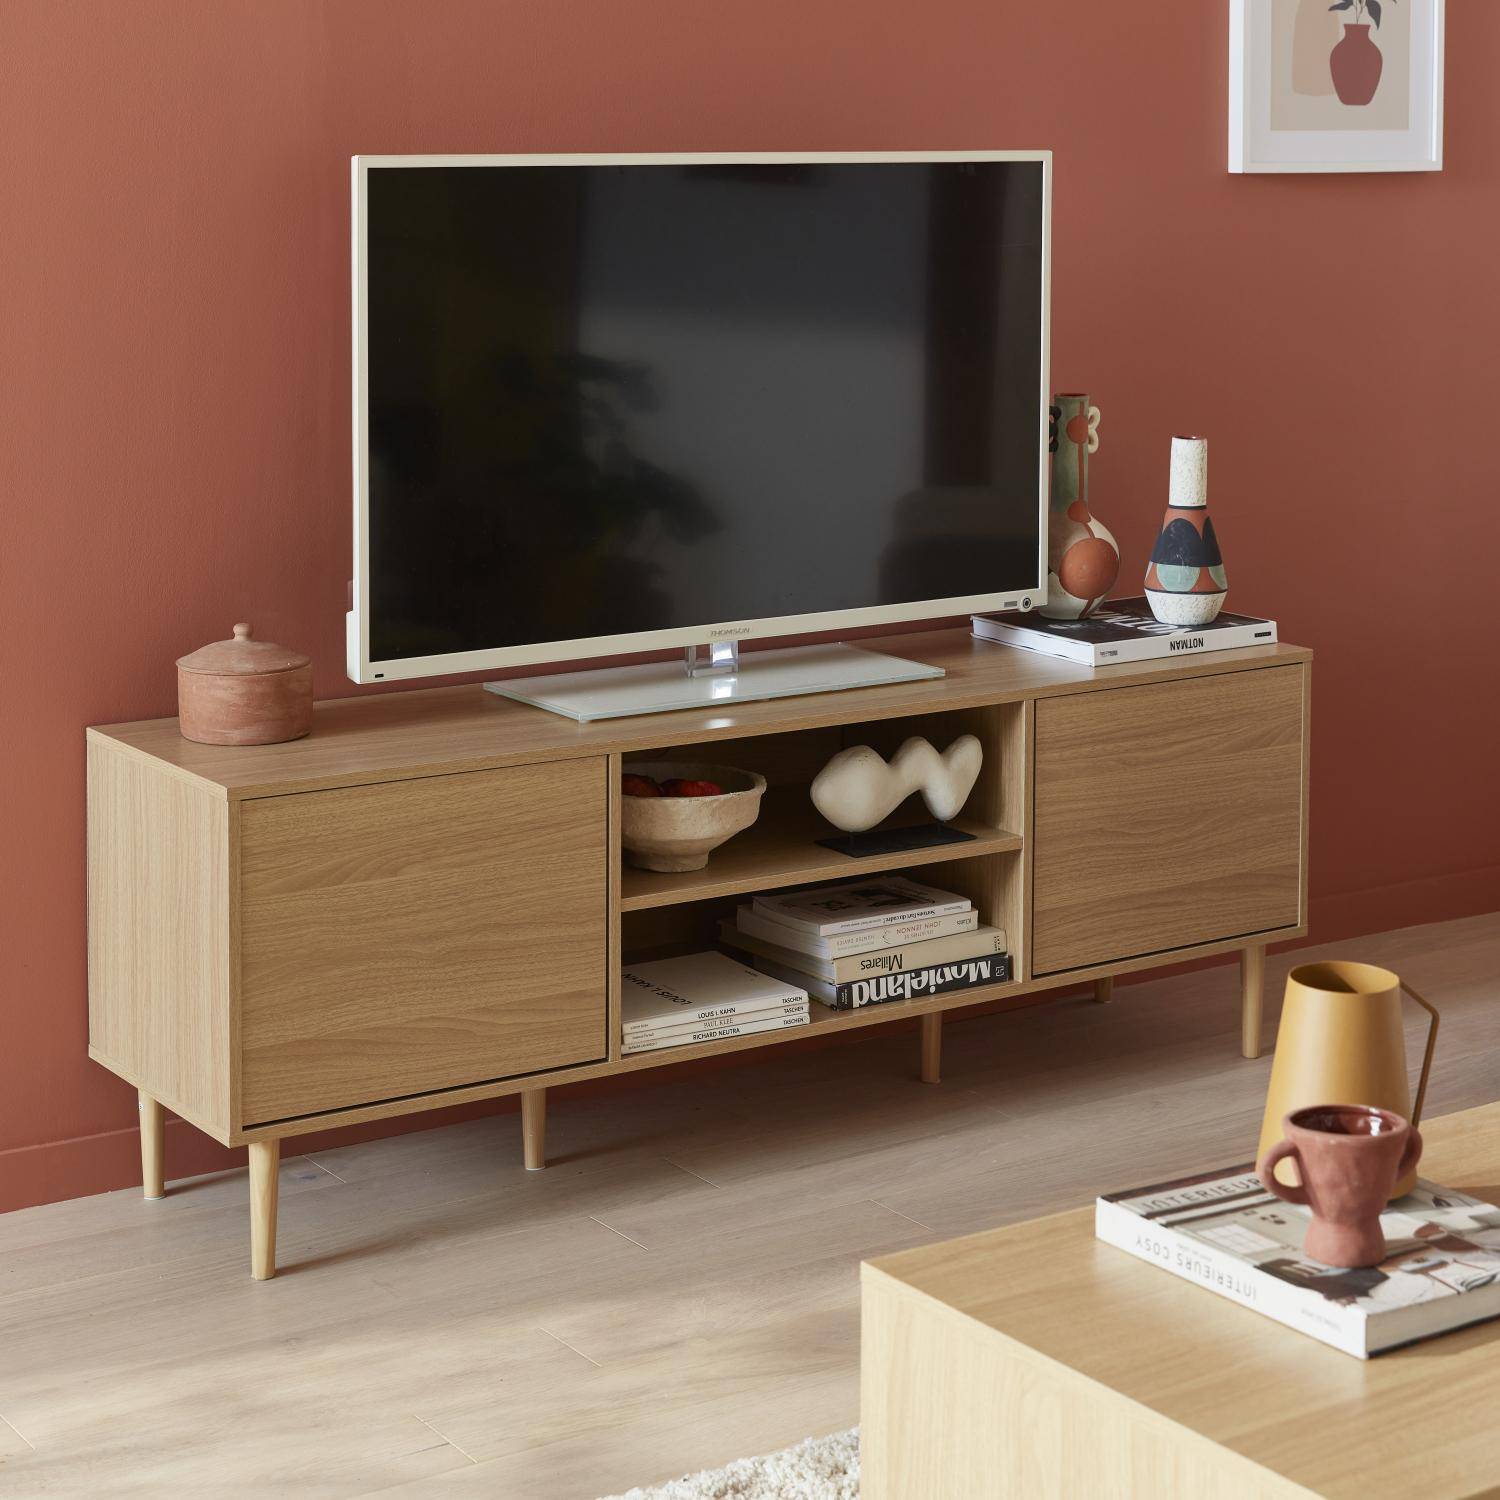 Soporte de TV de madera - Mika - 2 niveles, 3 estantes, 2 puertas, L 160 x A 40 x A 56cm Photo1